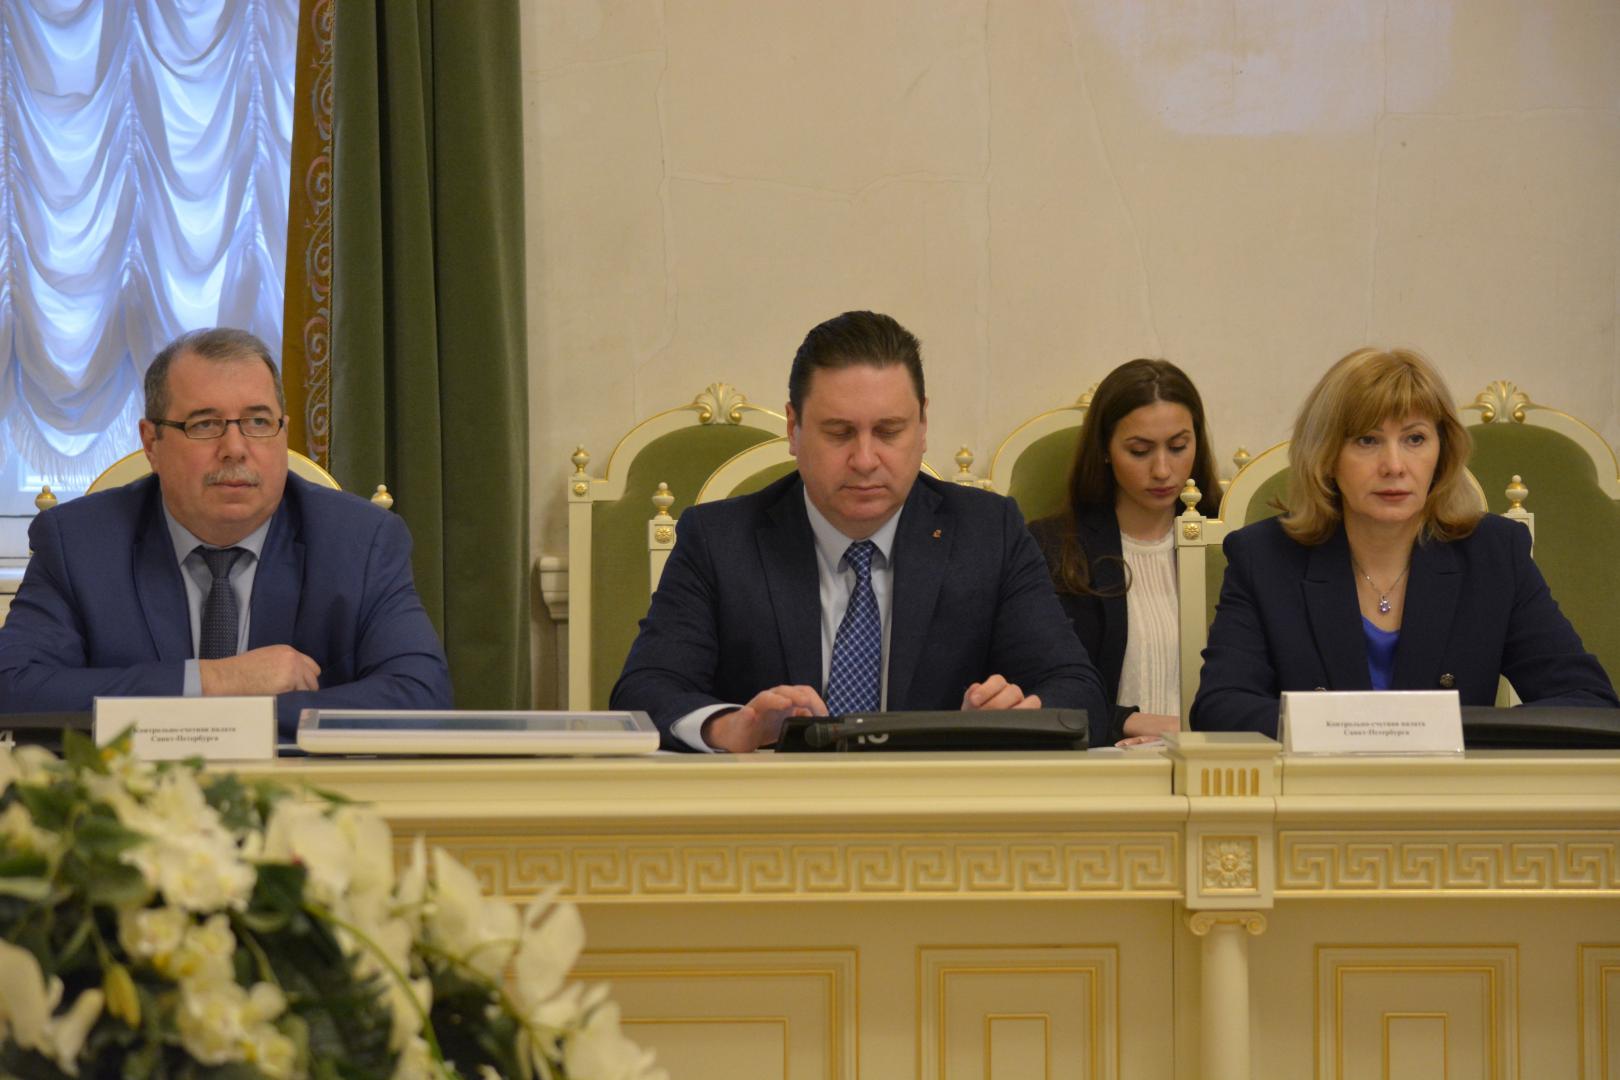 Руководители Контрольно-счетной палаты Санкт-Петербурга представили отчет о контрольном мероприятии в городском парламенте